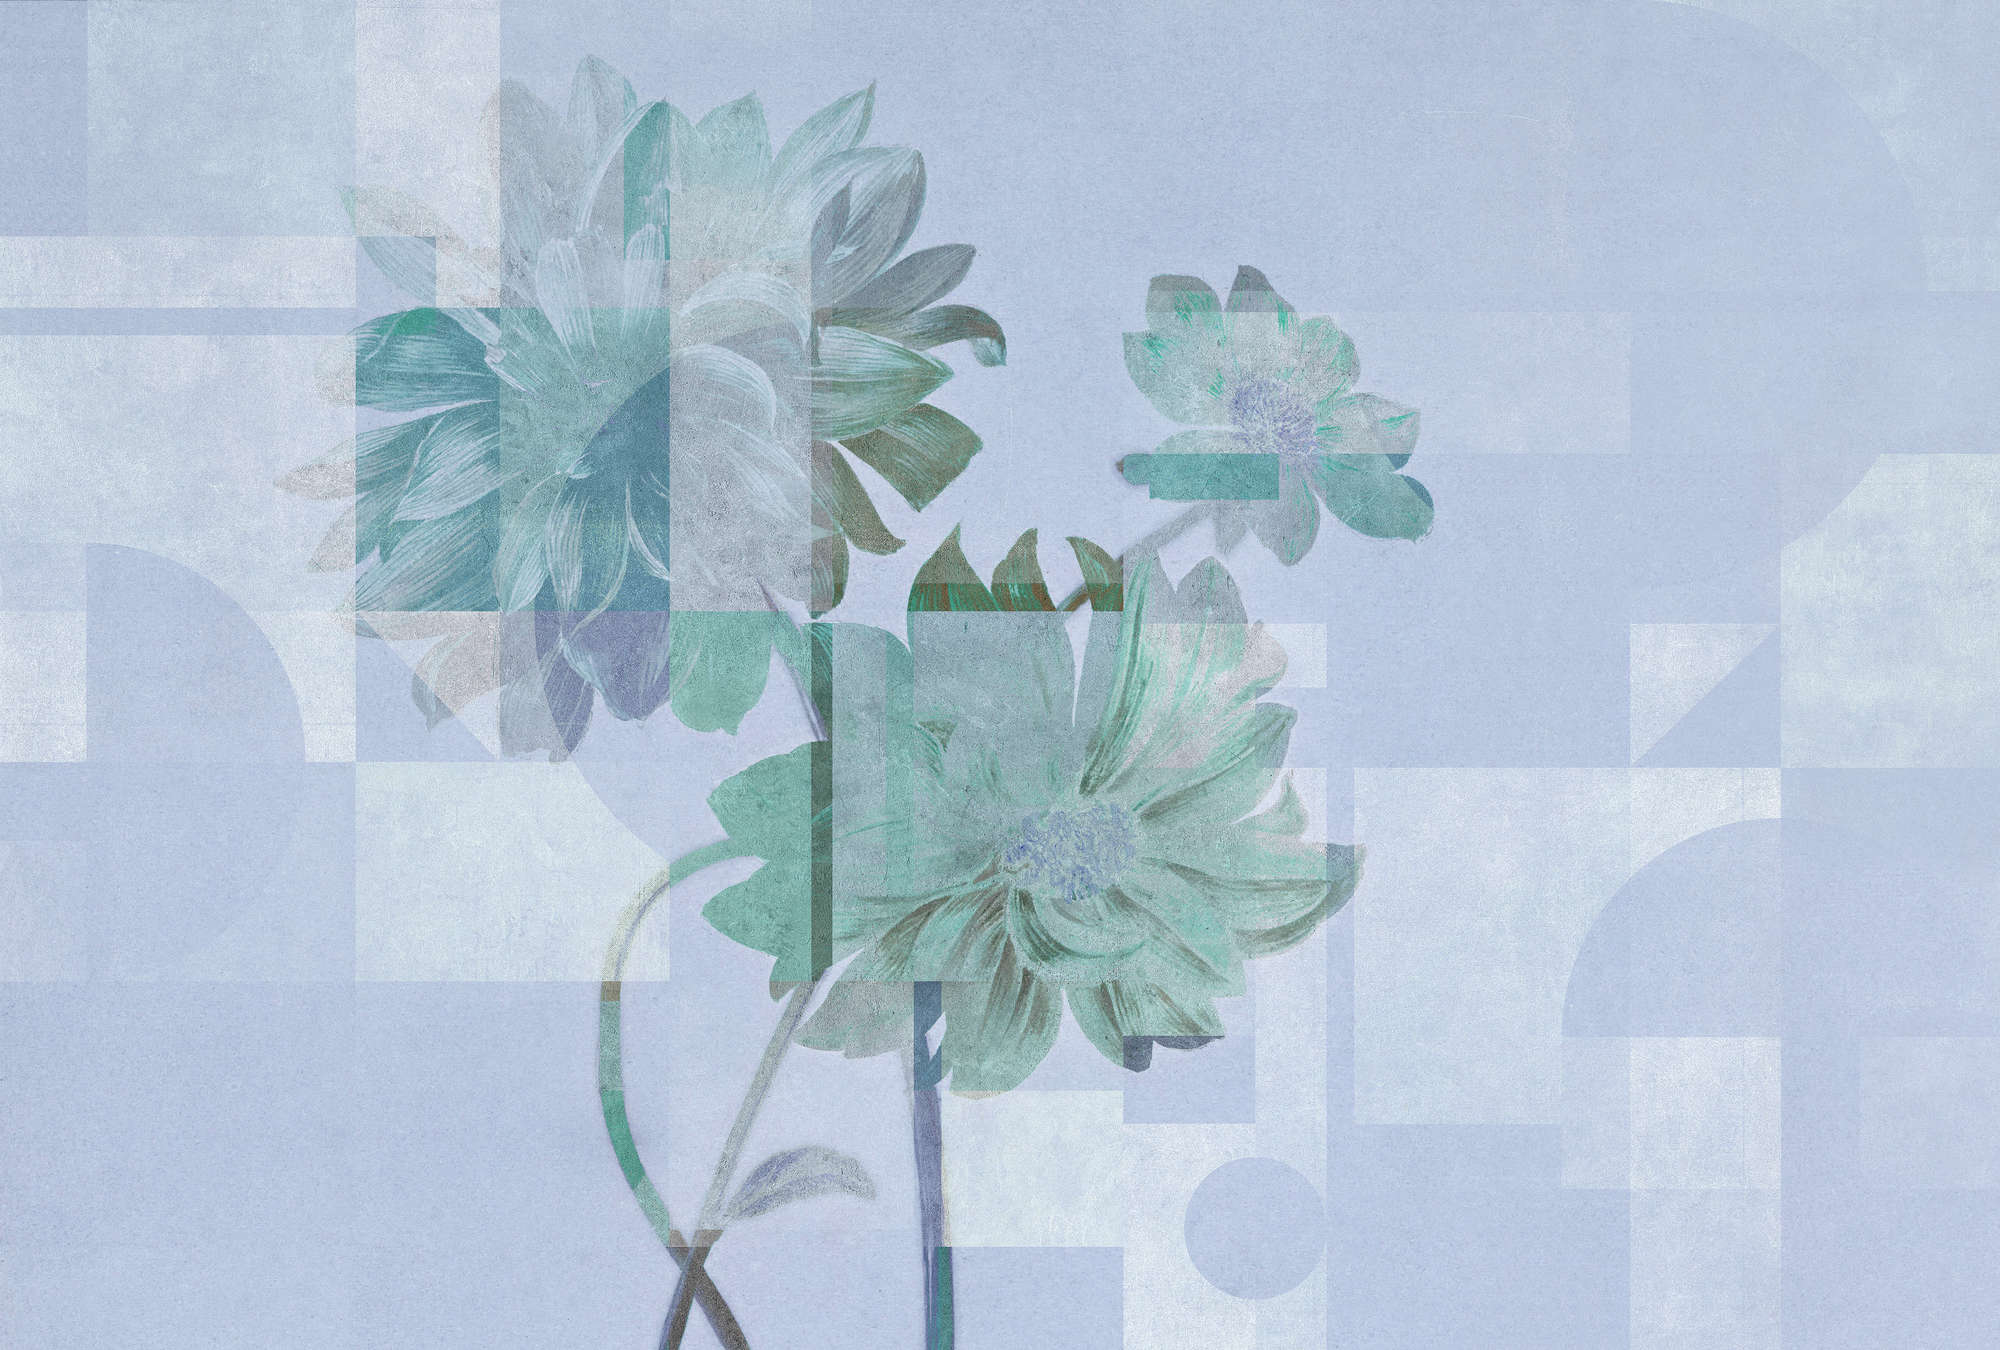             Queens Garden 1 - Bloemen behang blauw madeliefjes & grafisch patroon
        